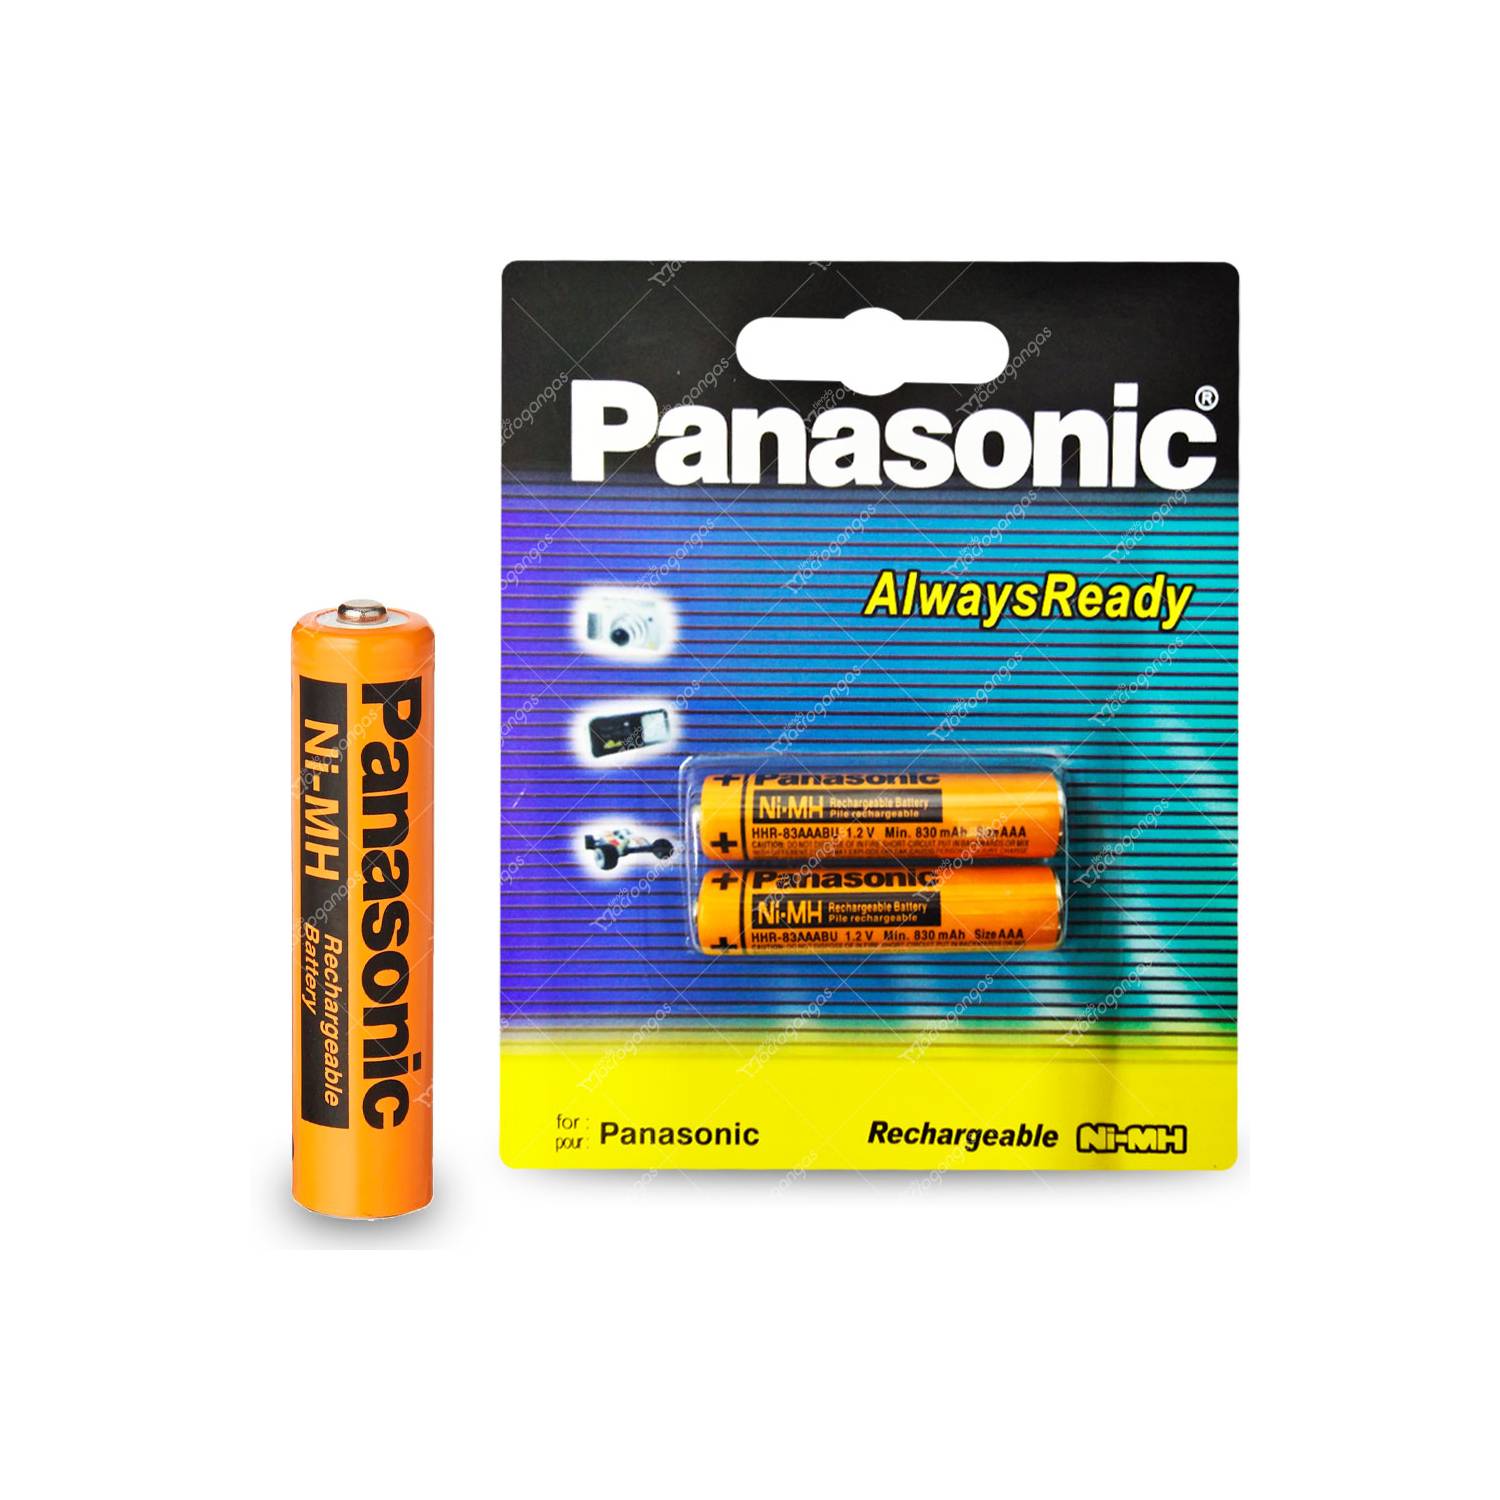 Pilas Baterias Recargable Panasonic Aaa 12v 830mah Pack X2 PANASONIC